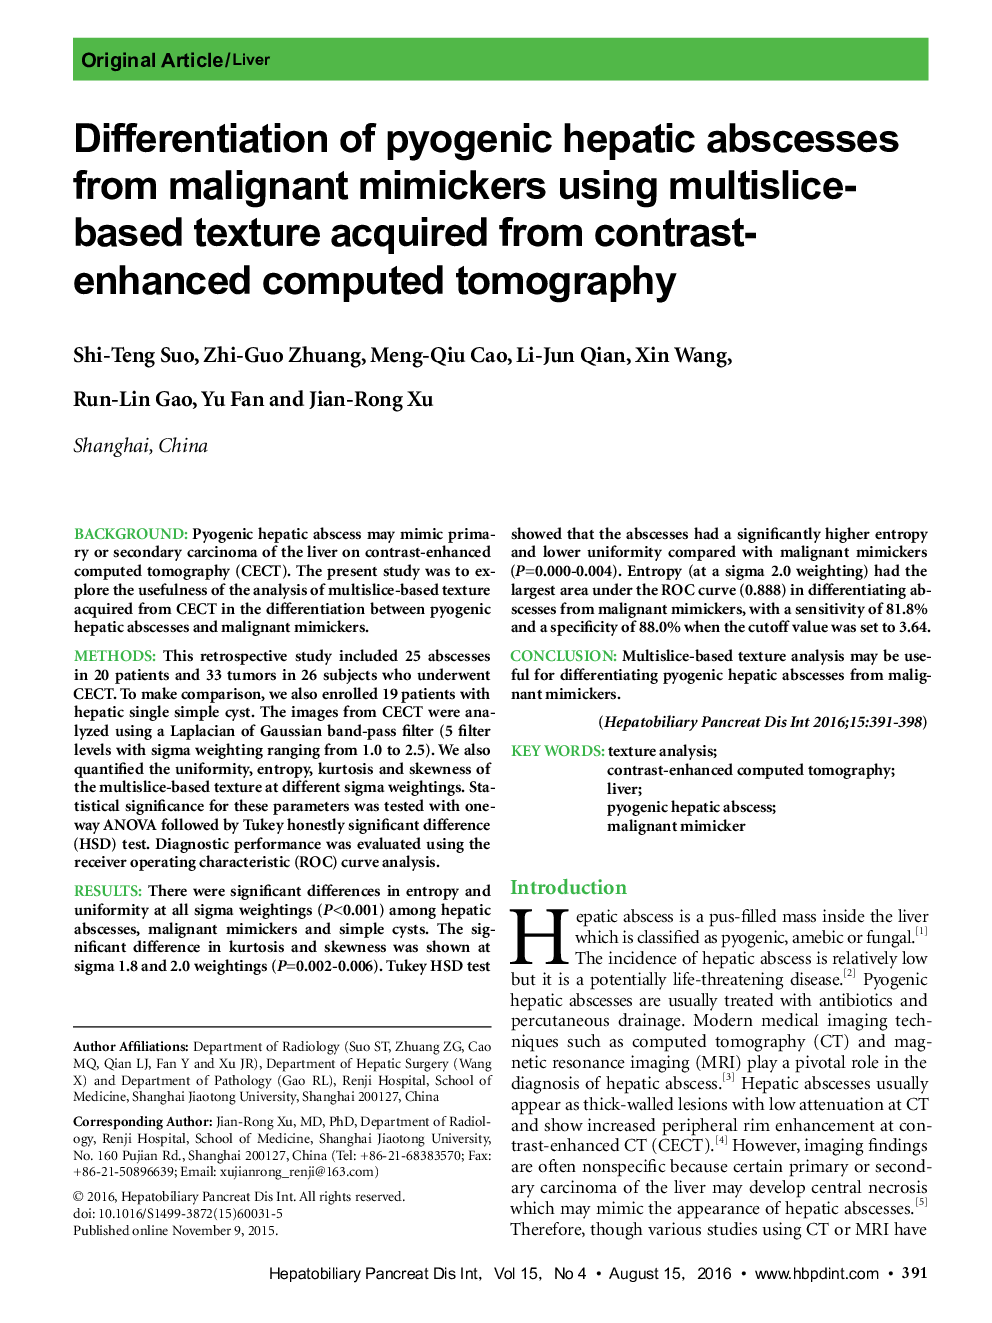 تمایز آبسه کبدی پیوژنیک از mimickers بدخیم با استفاده از بافت مبتنی بر چندقطعه به دست آمده از توموگرافی کامپیوتری با کنتراست افزایشی